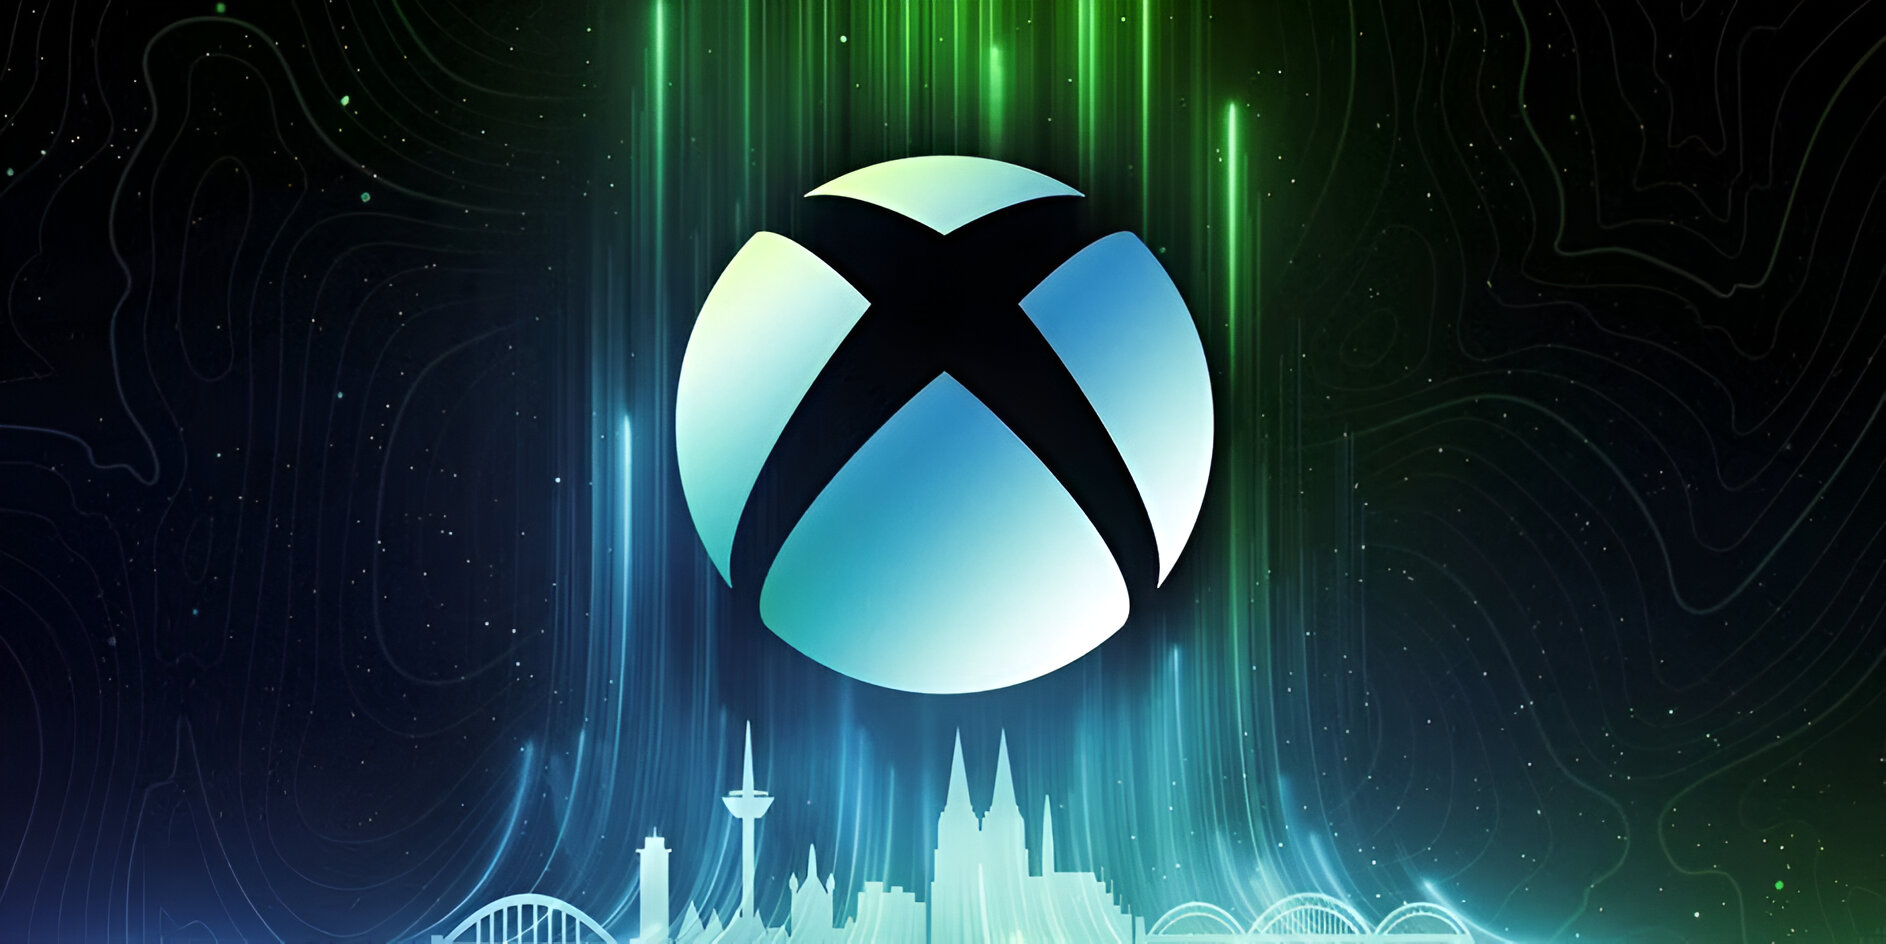 Sự kiện trình diễn mới của Xbox sẽ diễn ra vào tuần tới